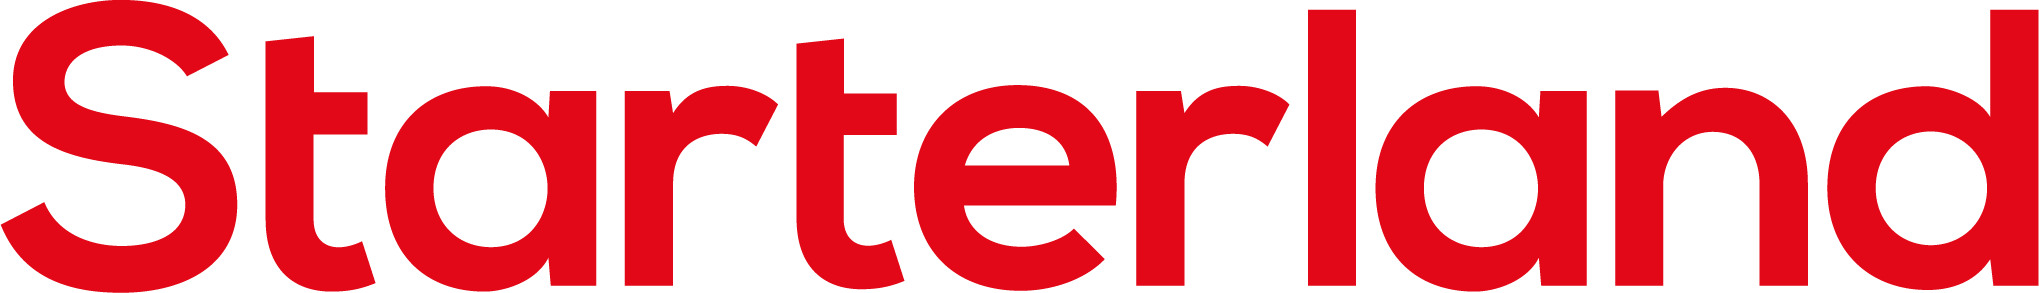 Ancien logo de Starterland de couleur rouge